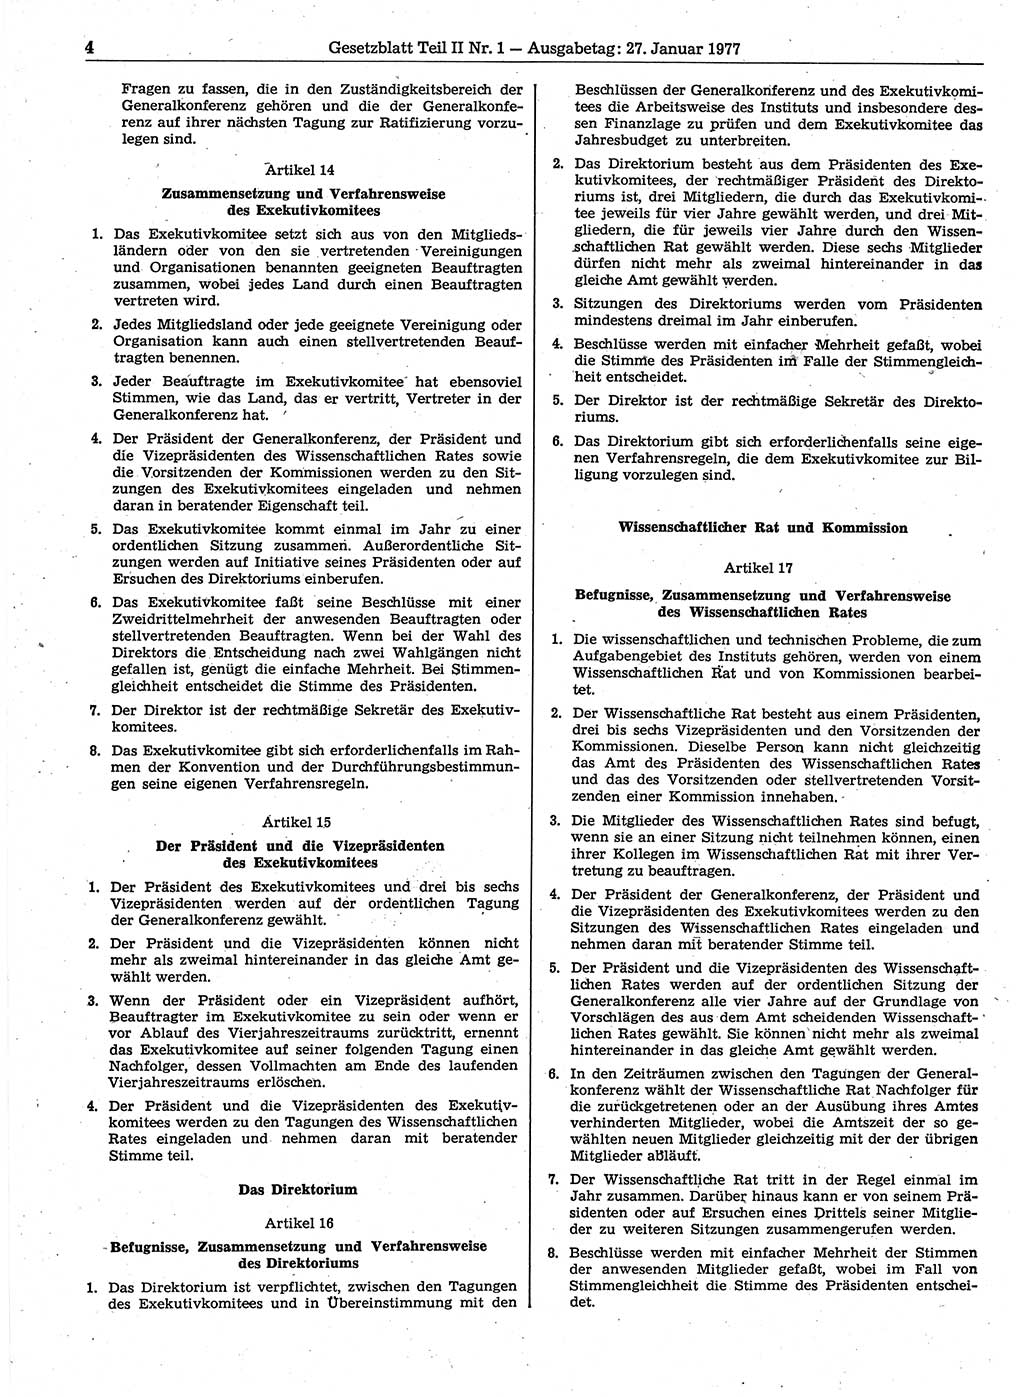 Gesetzblatt (GBl.) der Deutschen Demokratischen Republik (DDR) Teil ⅠⅠ 1977, Seite 4 (GBl. DDR ⅠⅠ 1977, S. 4)